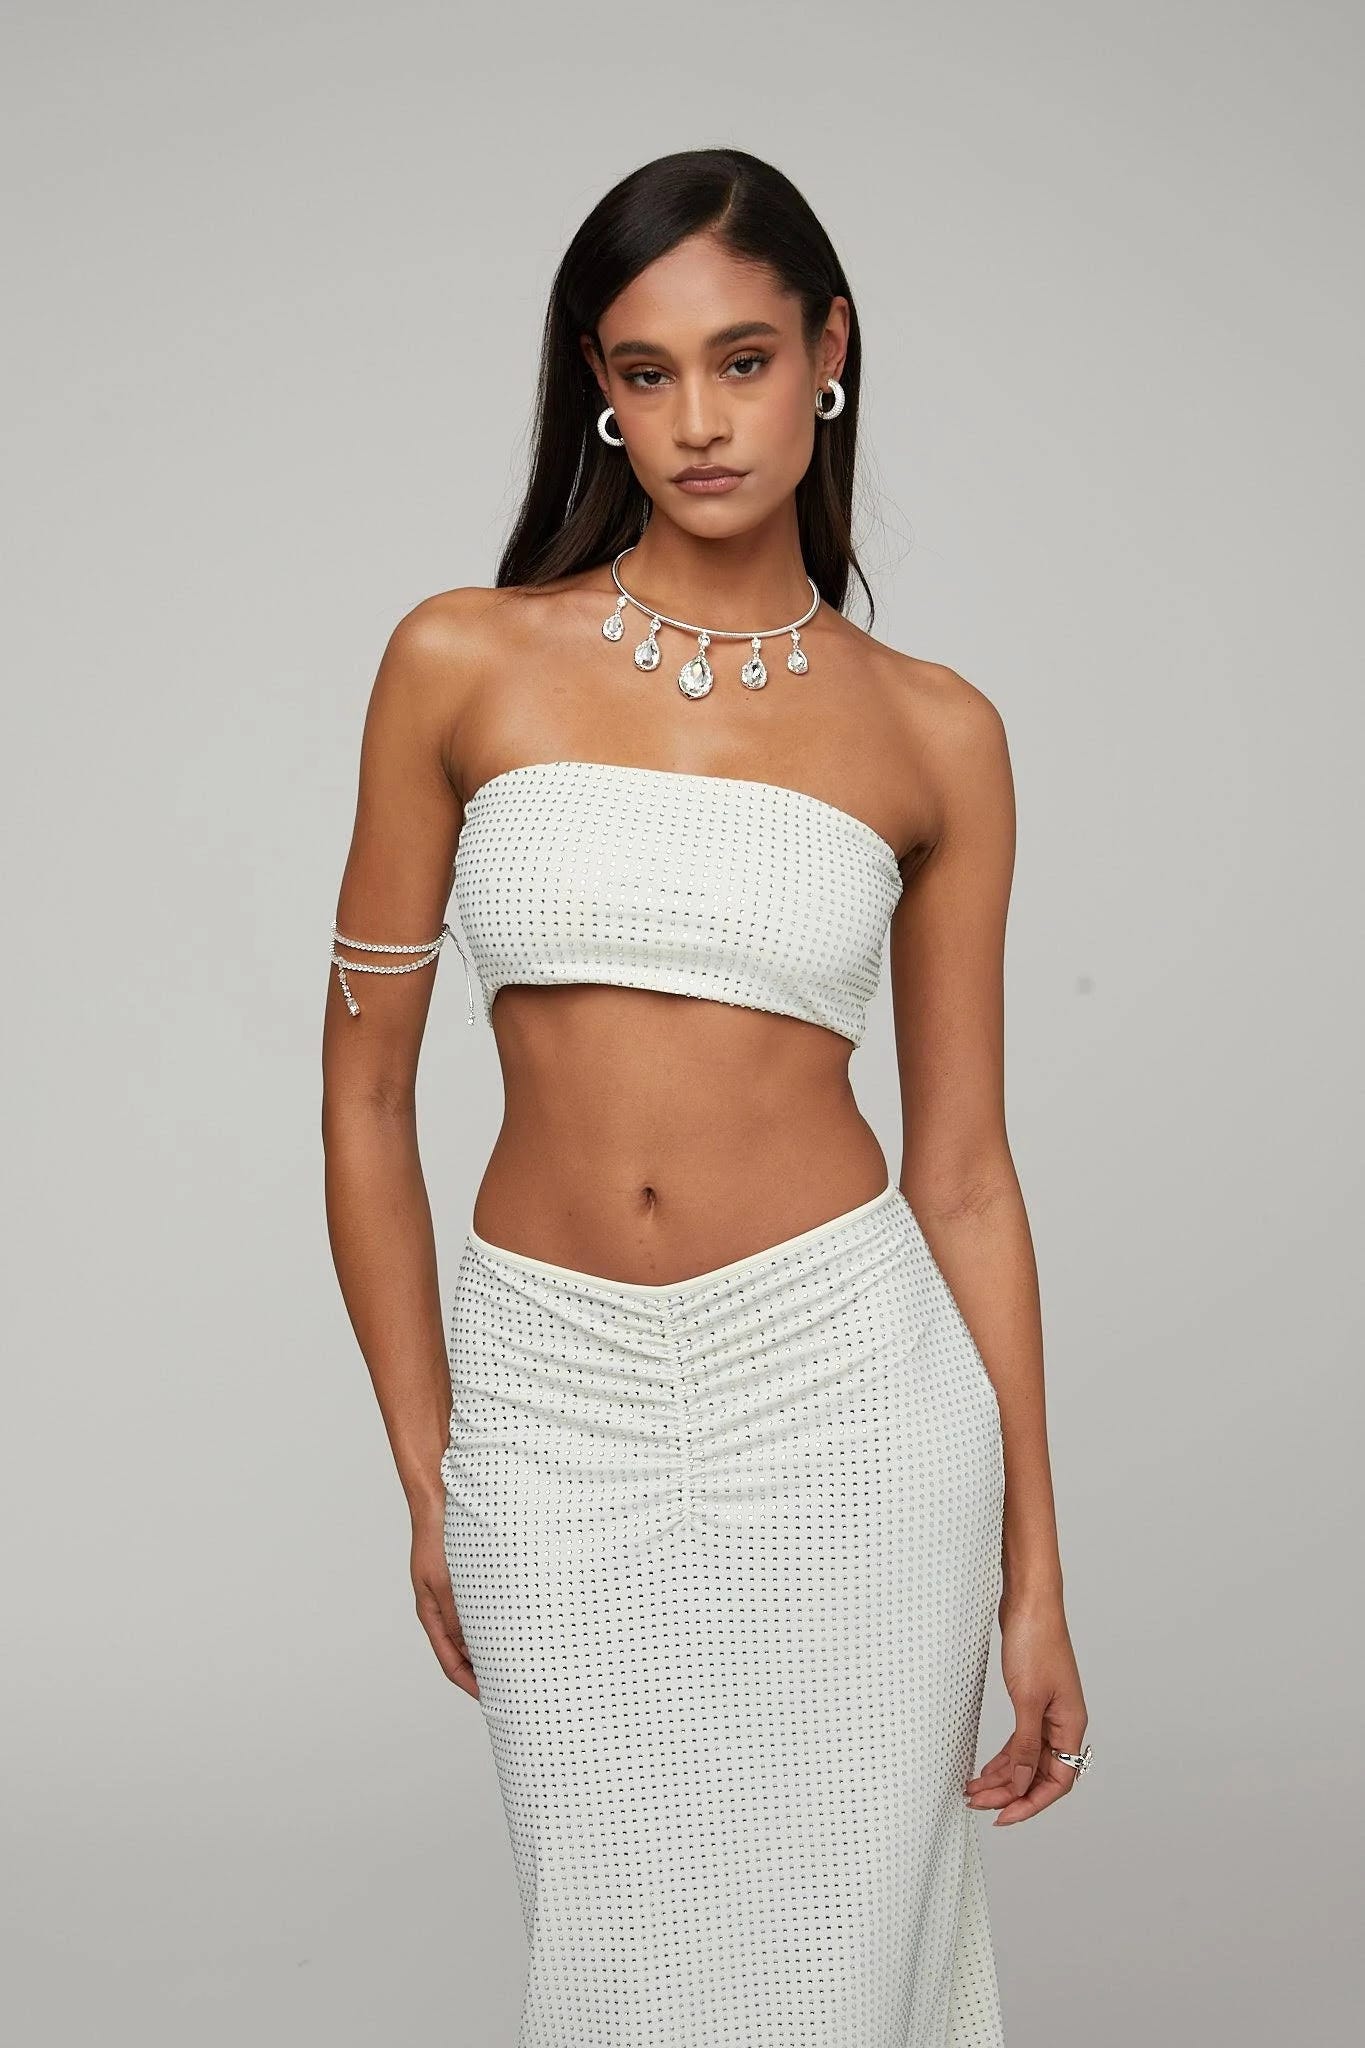 Stylish High-Waisted White Midi Crystal Skirt: Versatile and Comfortable | Image